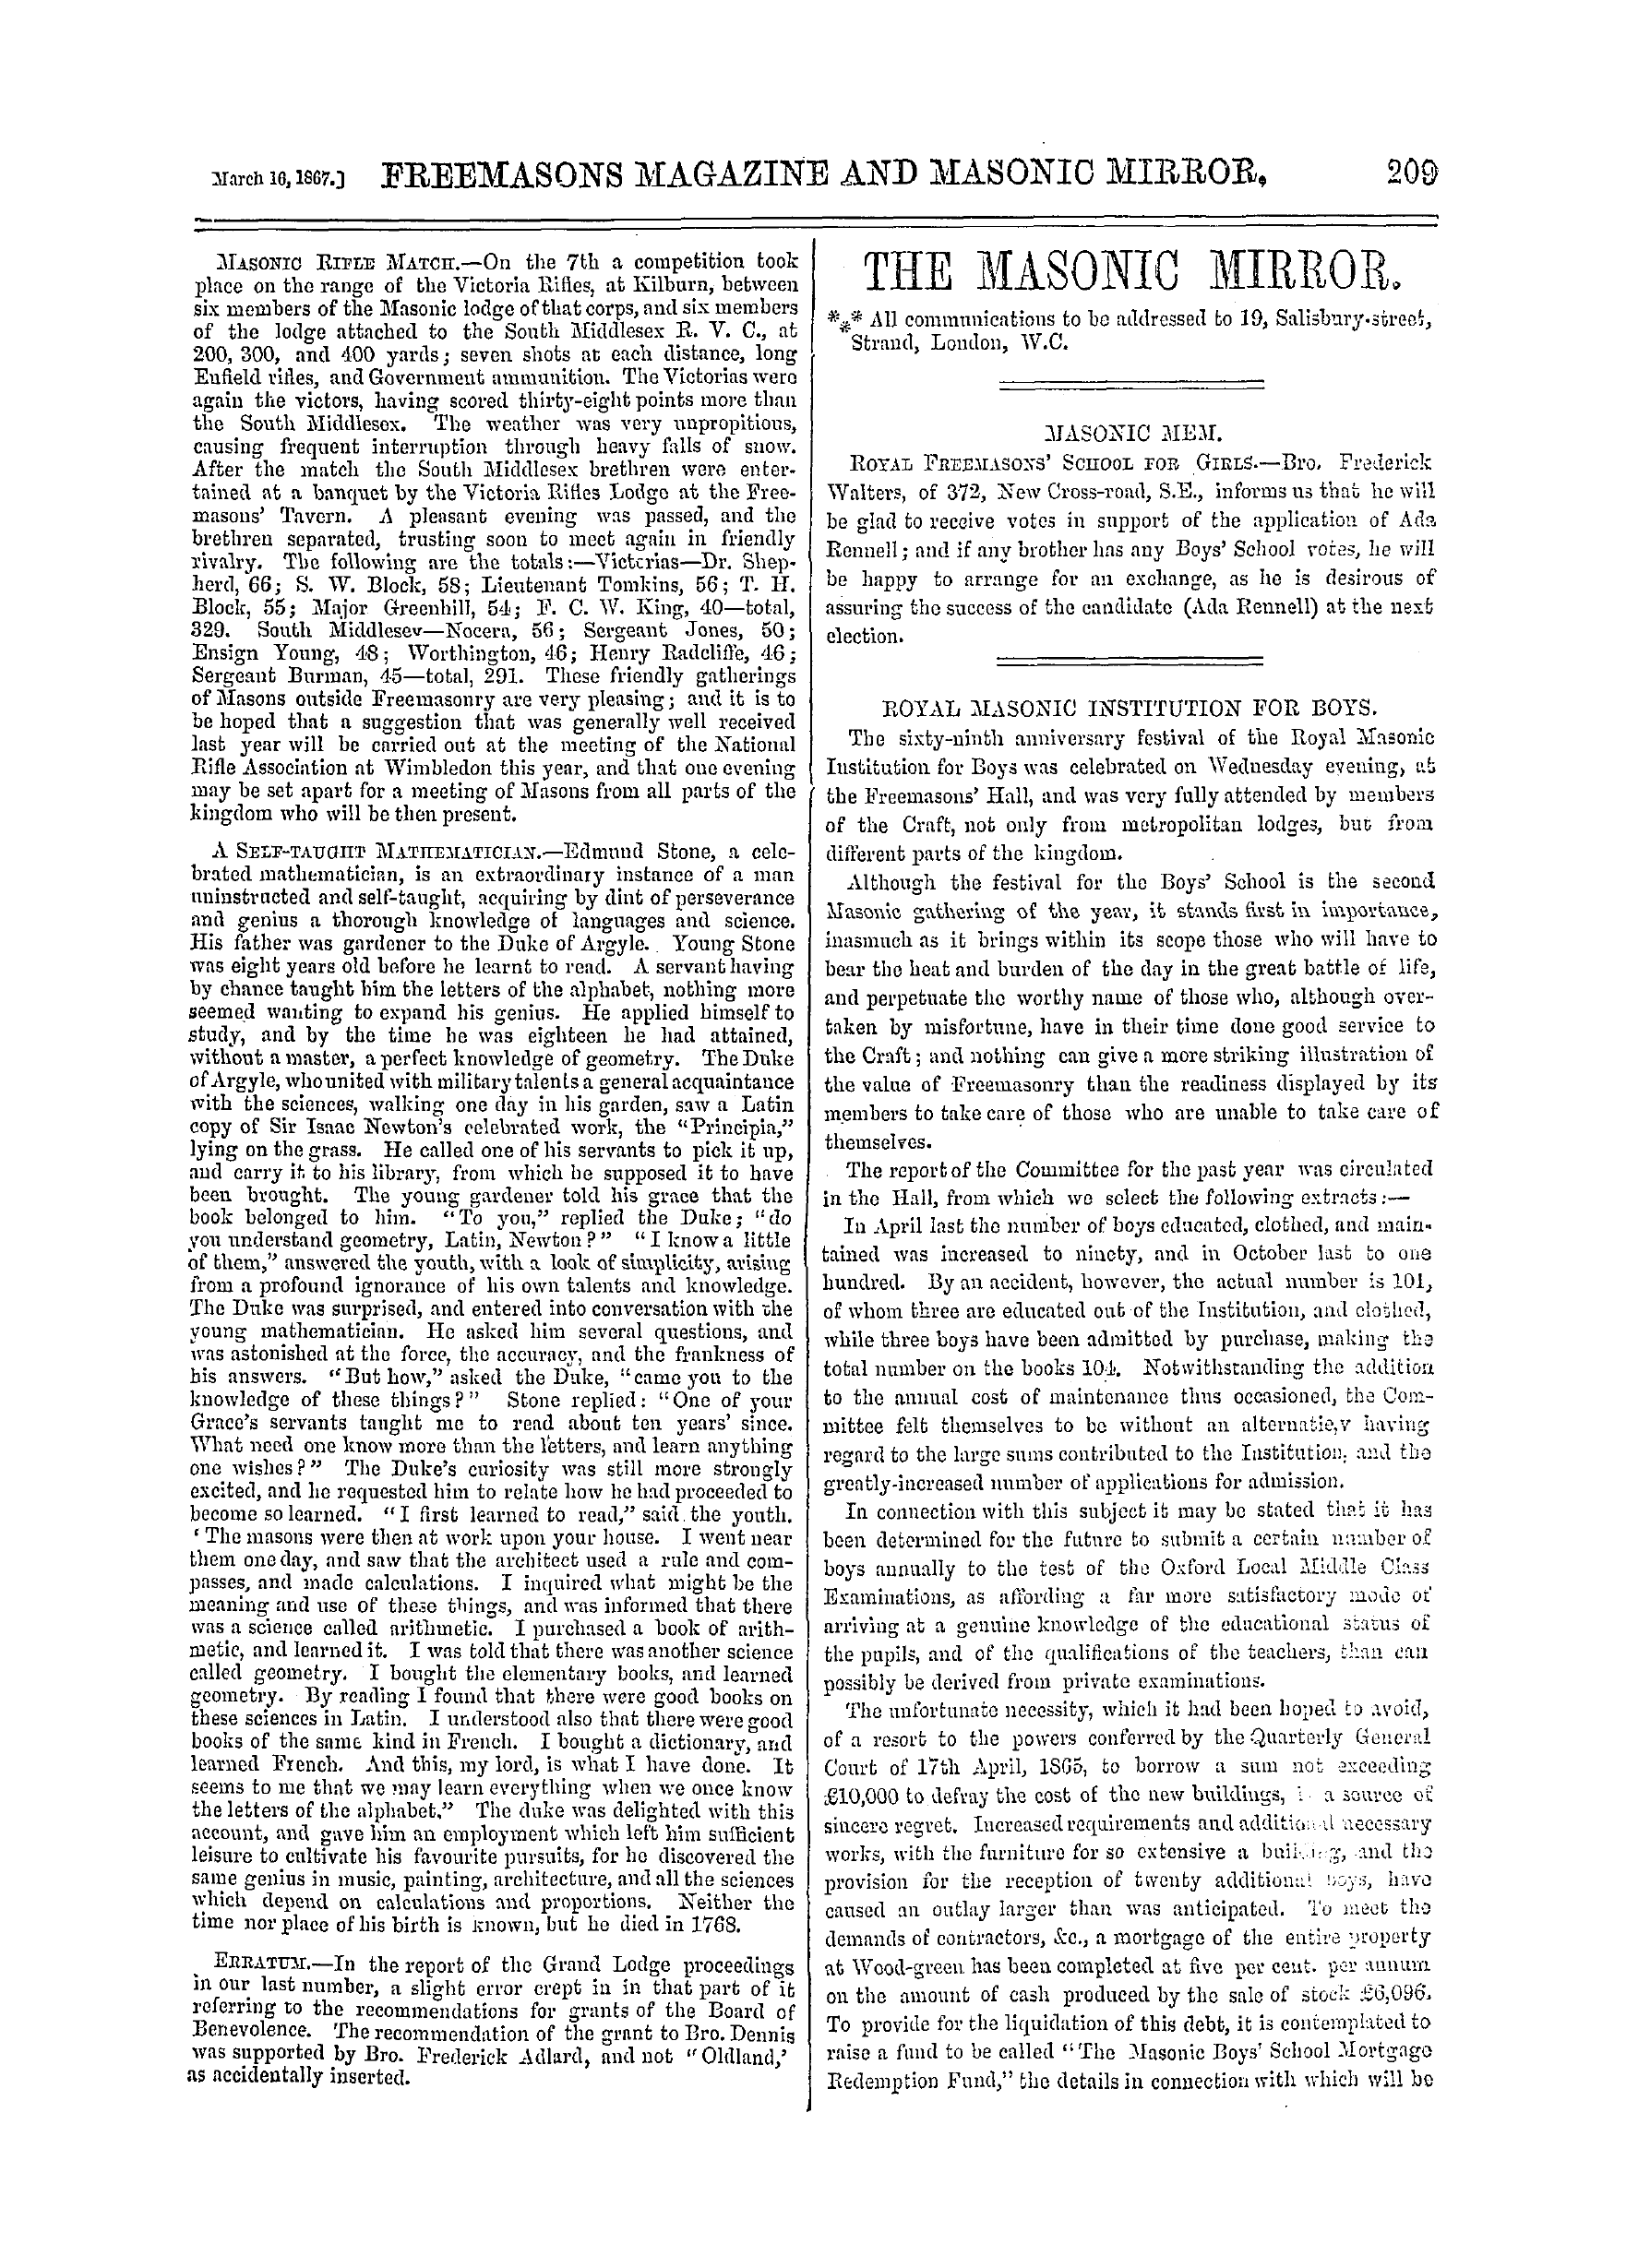 The Freemasons' Monthly Magazine: 1867-03-16: 9